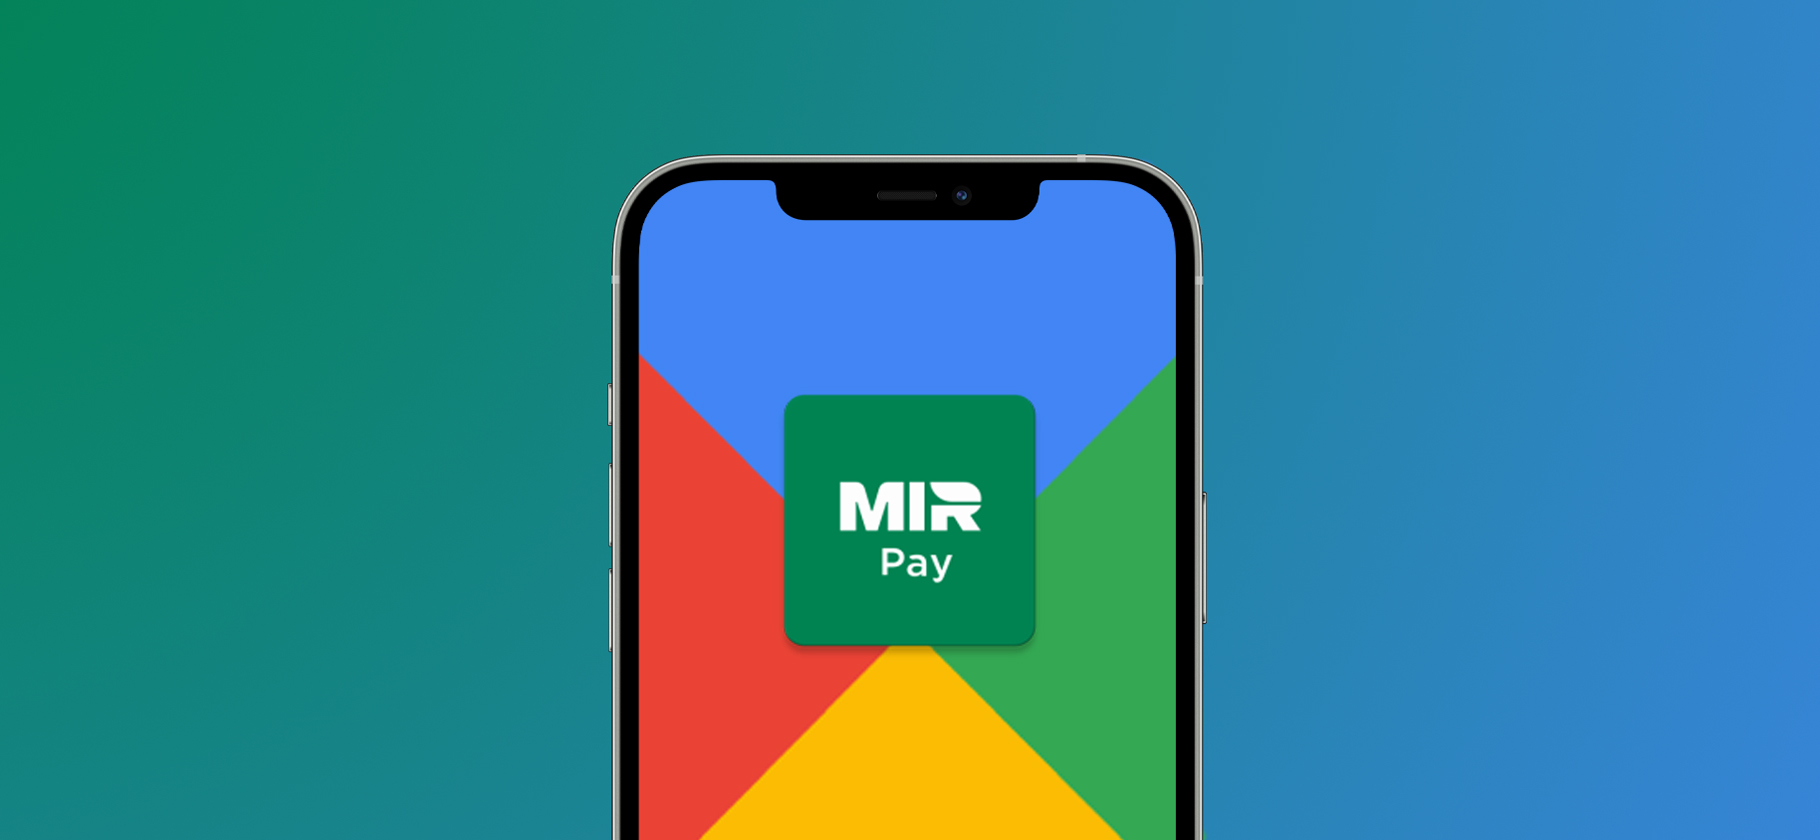 Приложение Mir Pay удалили из Google Play: как его установить альтернативными способами